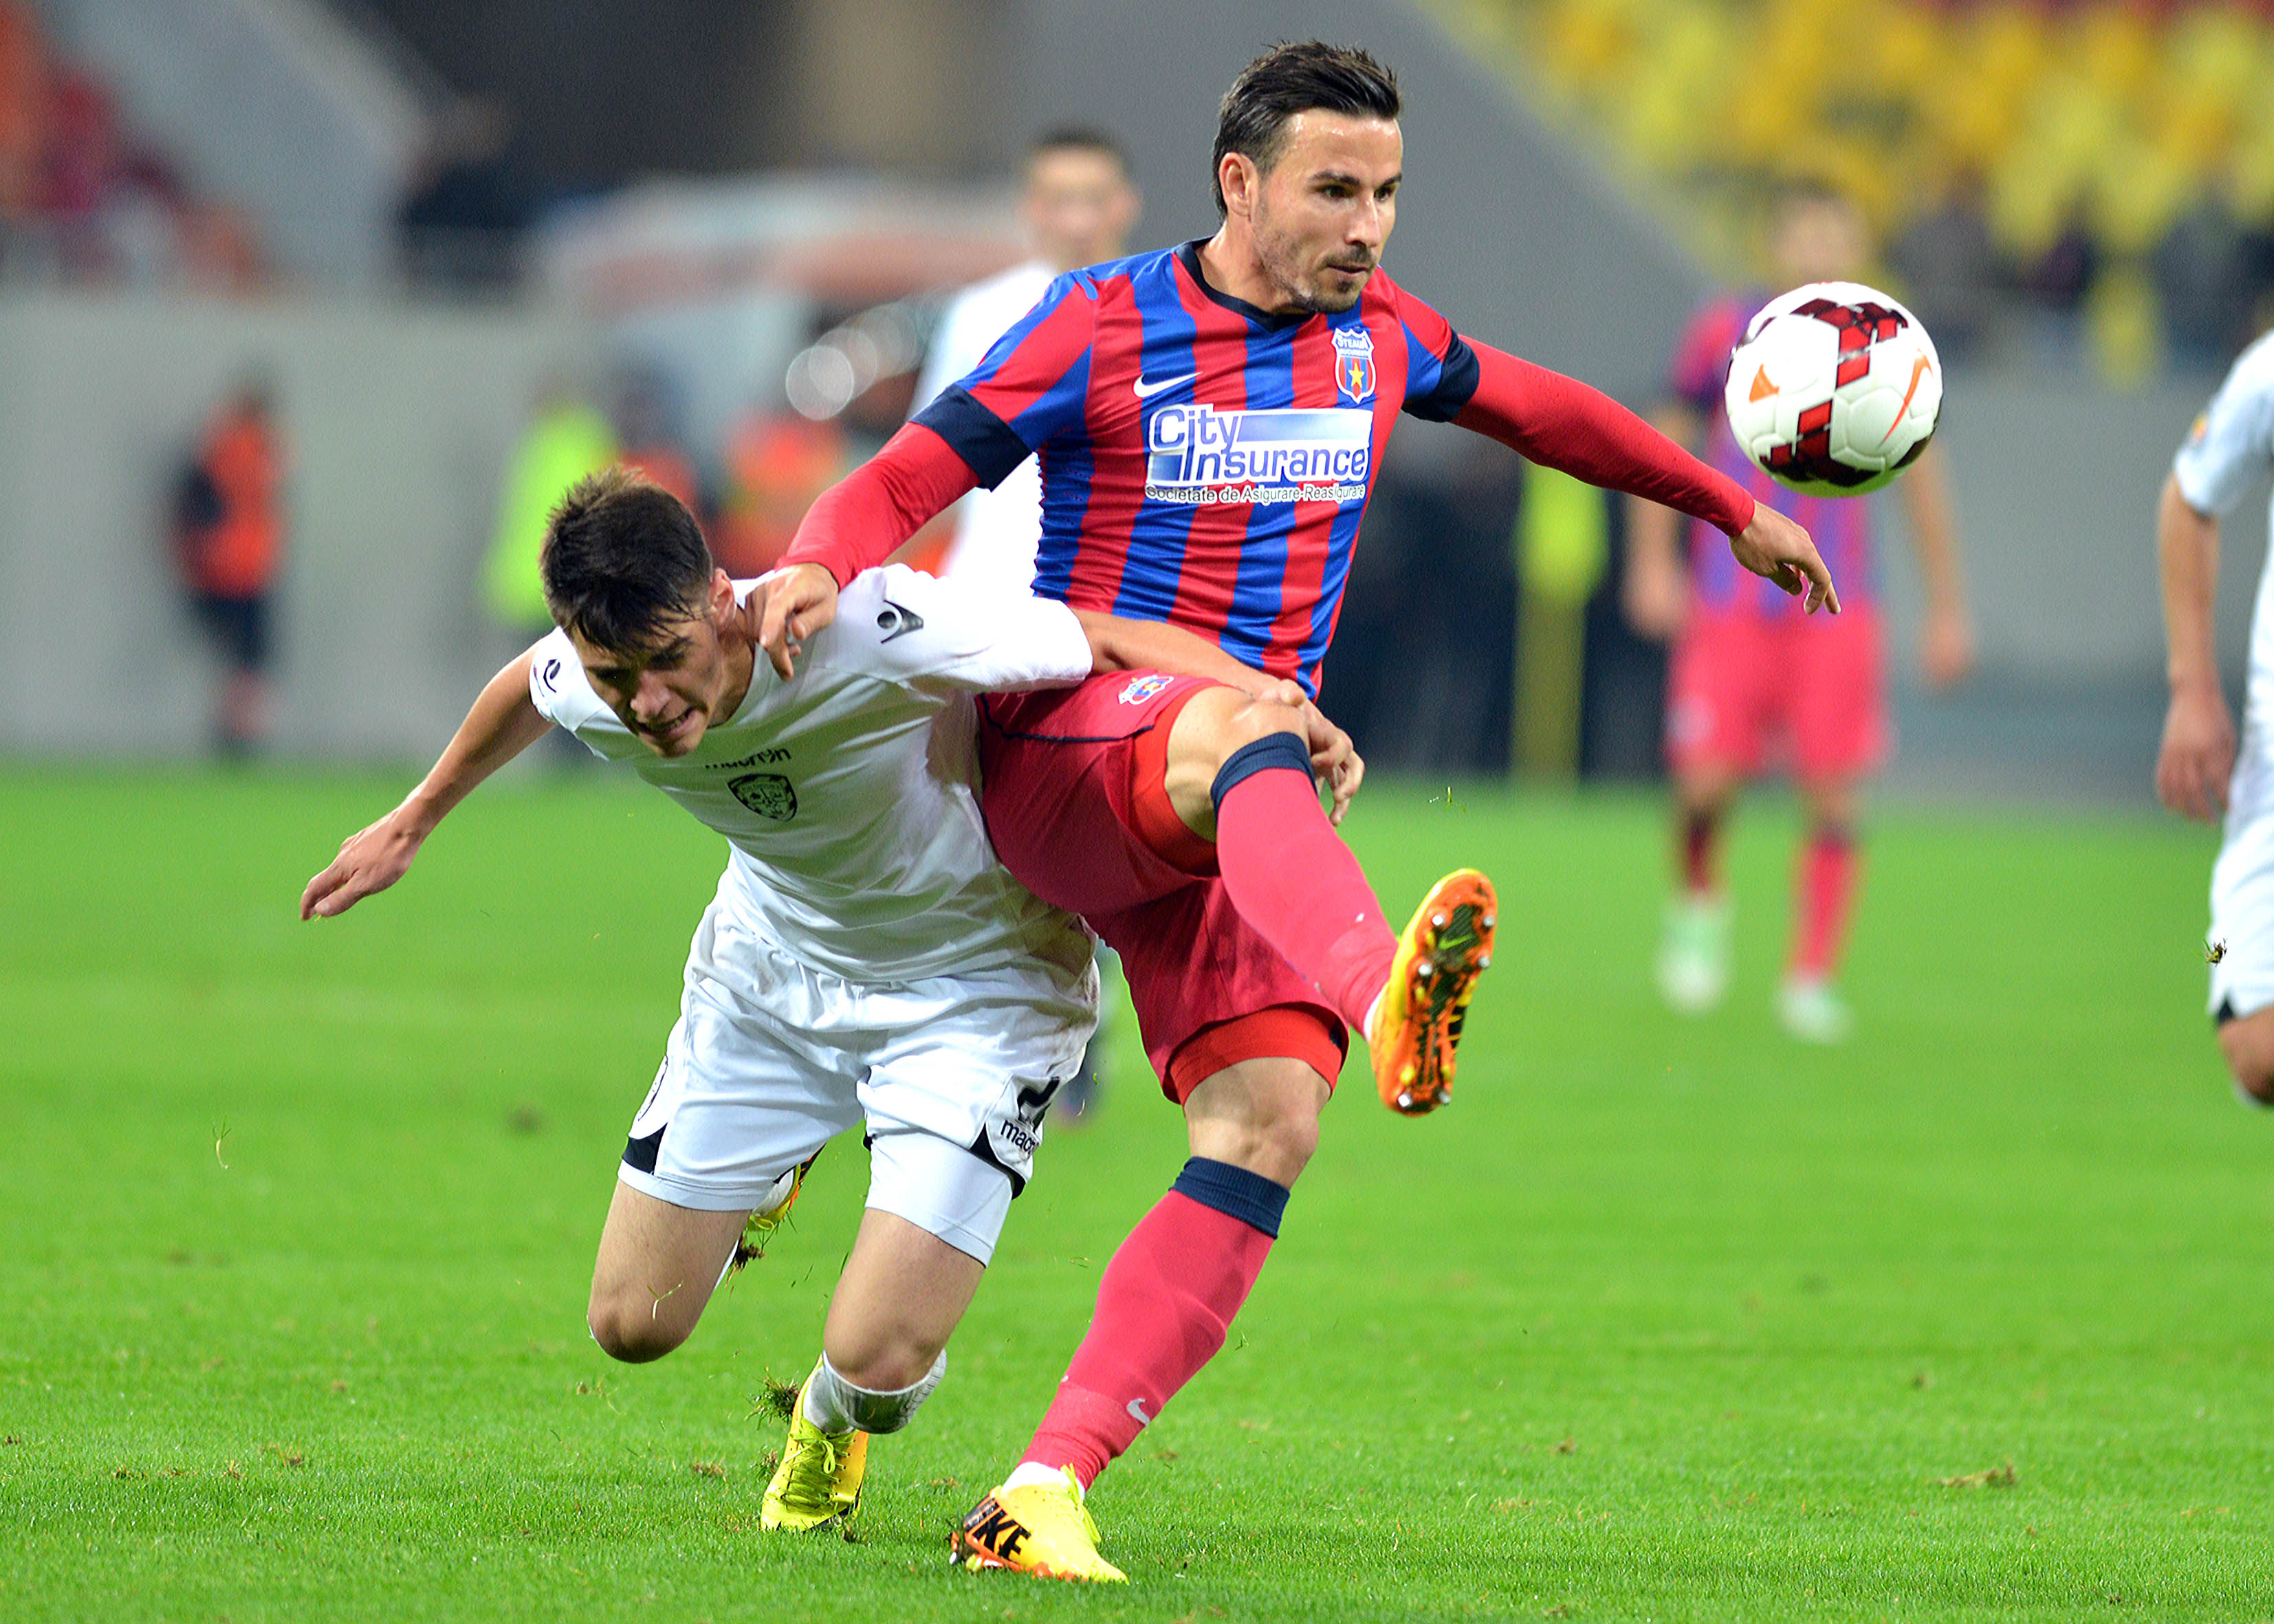 Dupa ce a plecat de la Steaua, Adrian Cristea nu a reusit sa isi mai gaseasca echipa